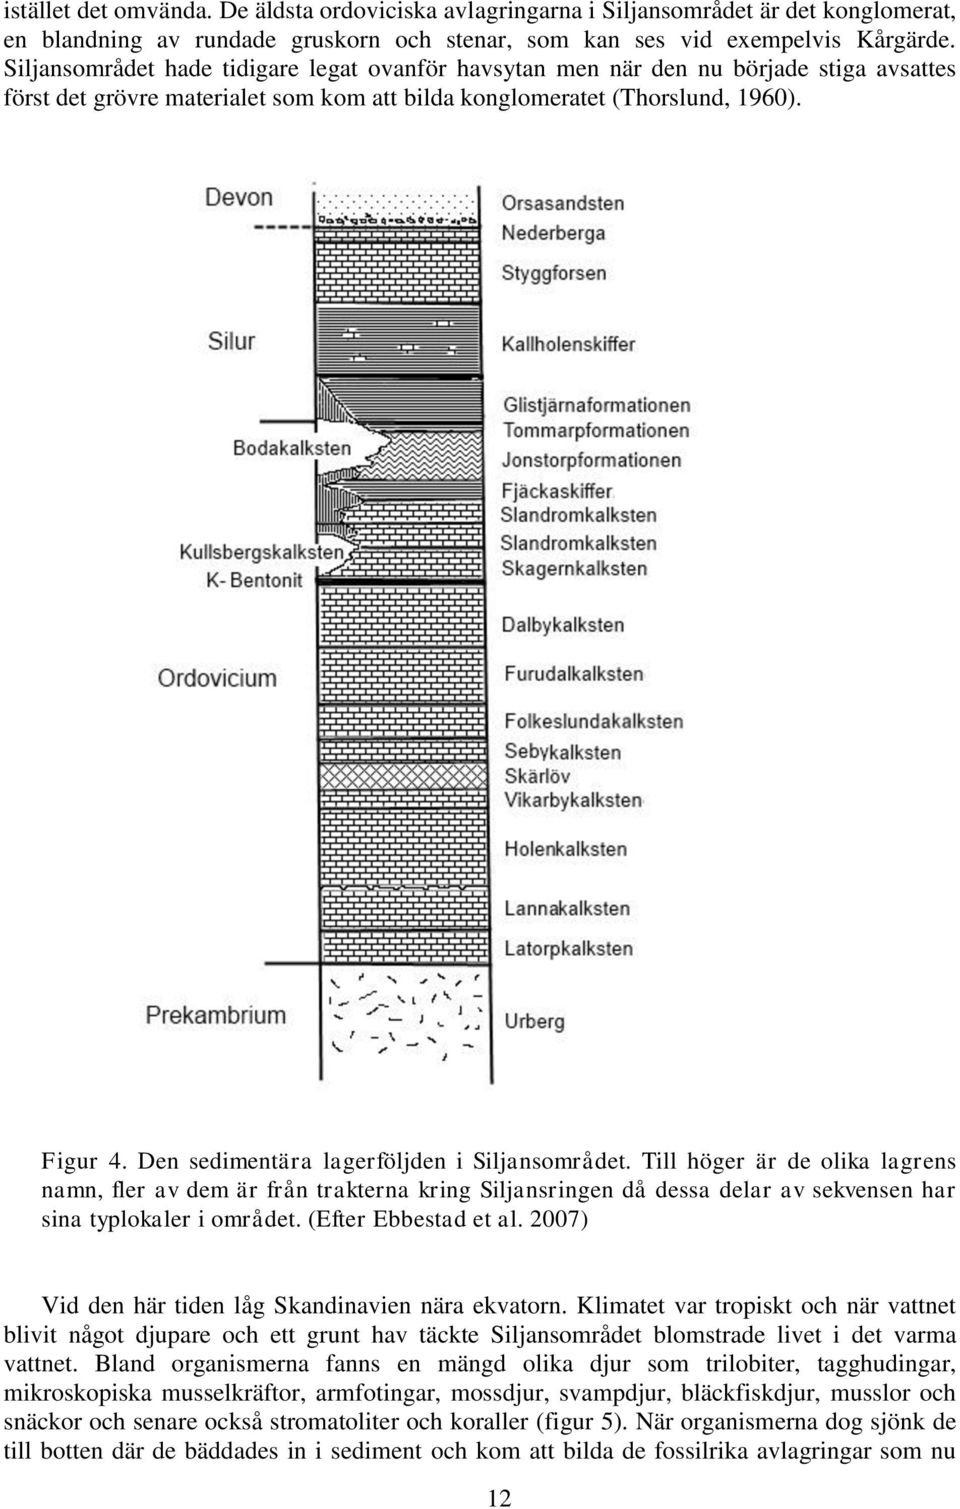 Den sedimentära lagerföljden i Siljansområdet. Till höger är de olika lagrens namn, fler av dem är från trakterna kring Siljansringen då dessa delar av sekvensen har sina typlokaler i området.